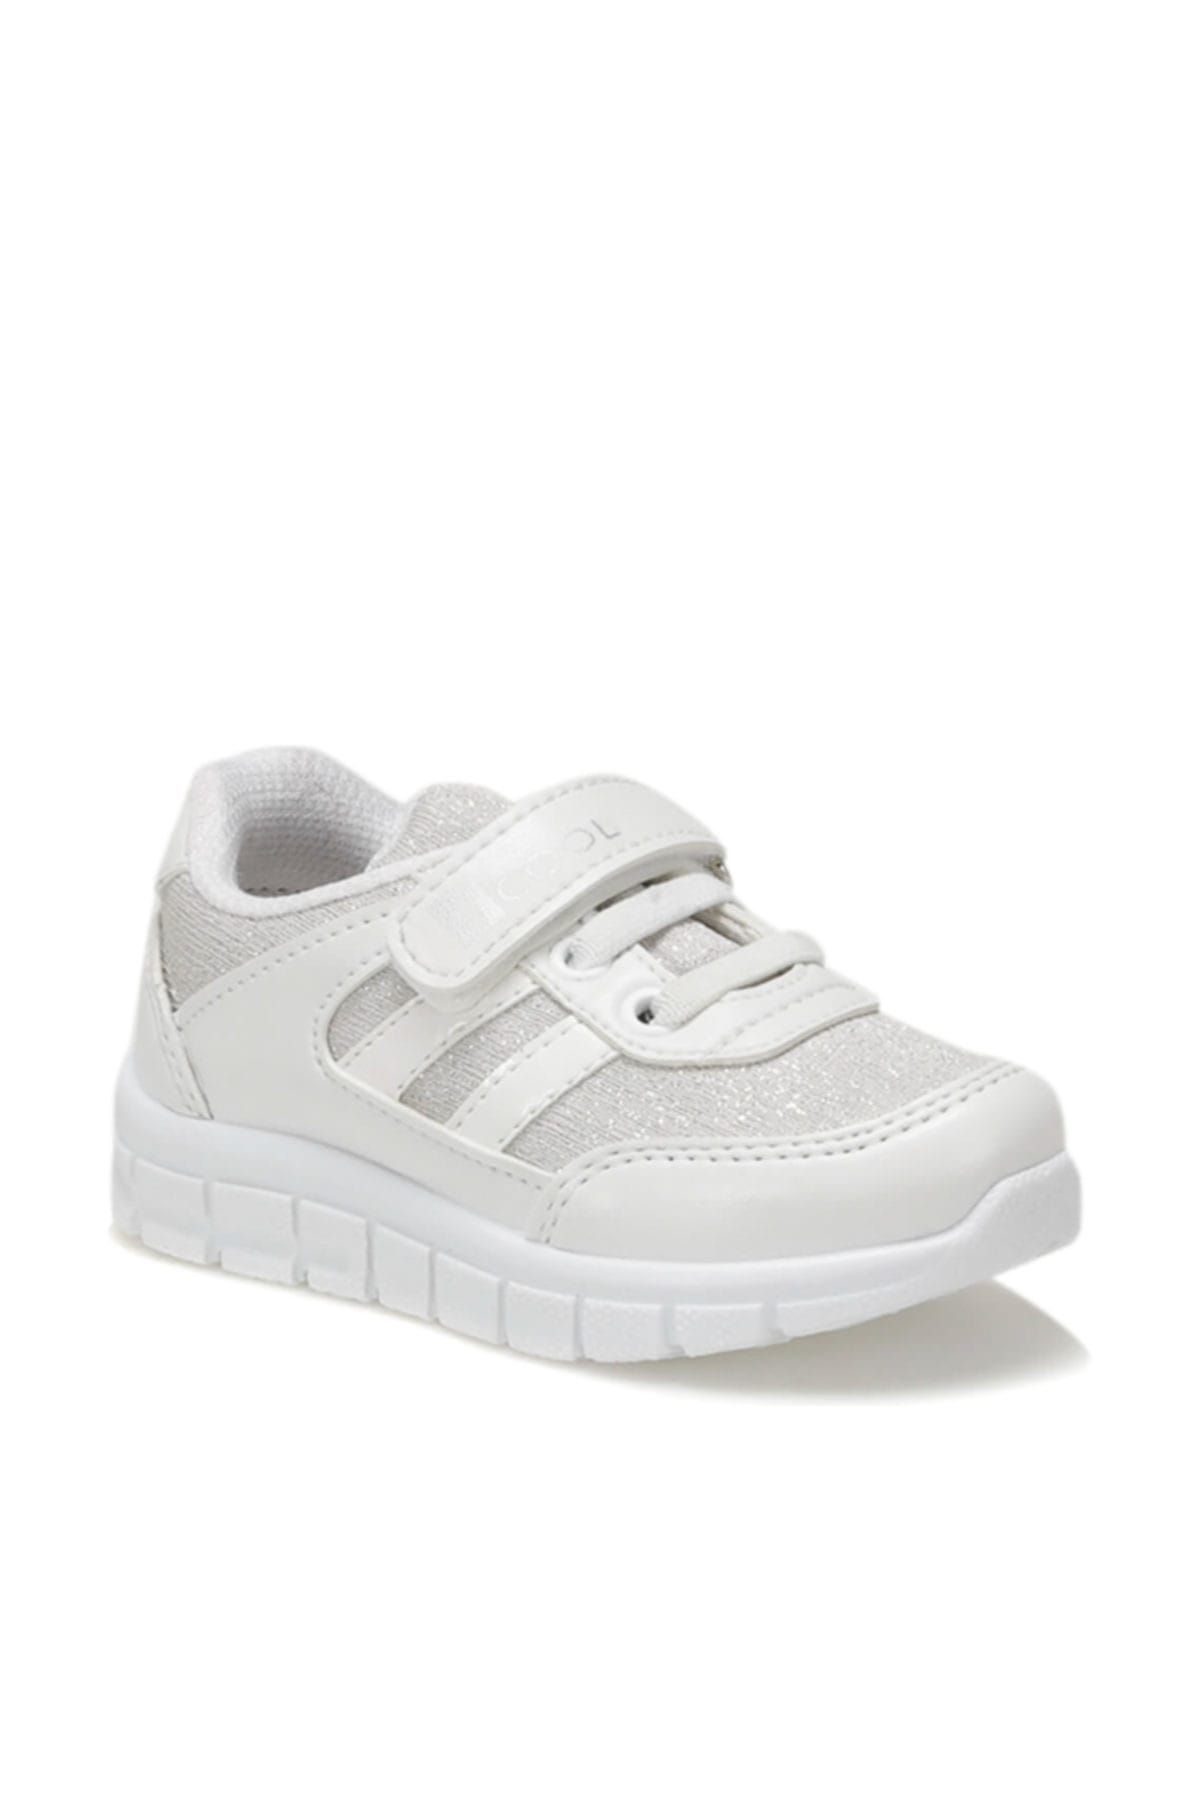 Icool VEGAS Beyaz Kız Çocuk Sneaker Ayakkabı 100379404